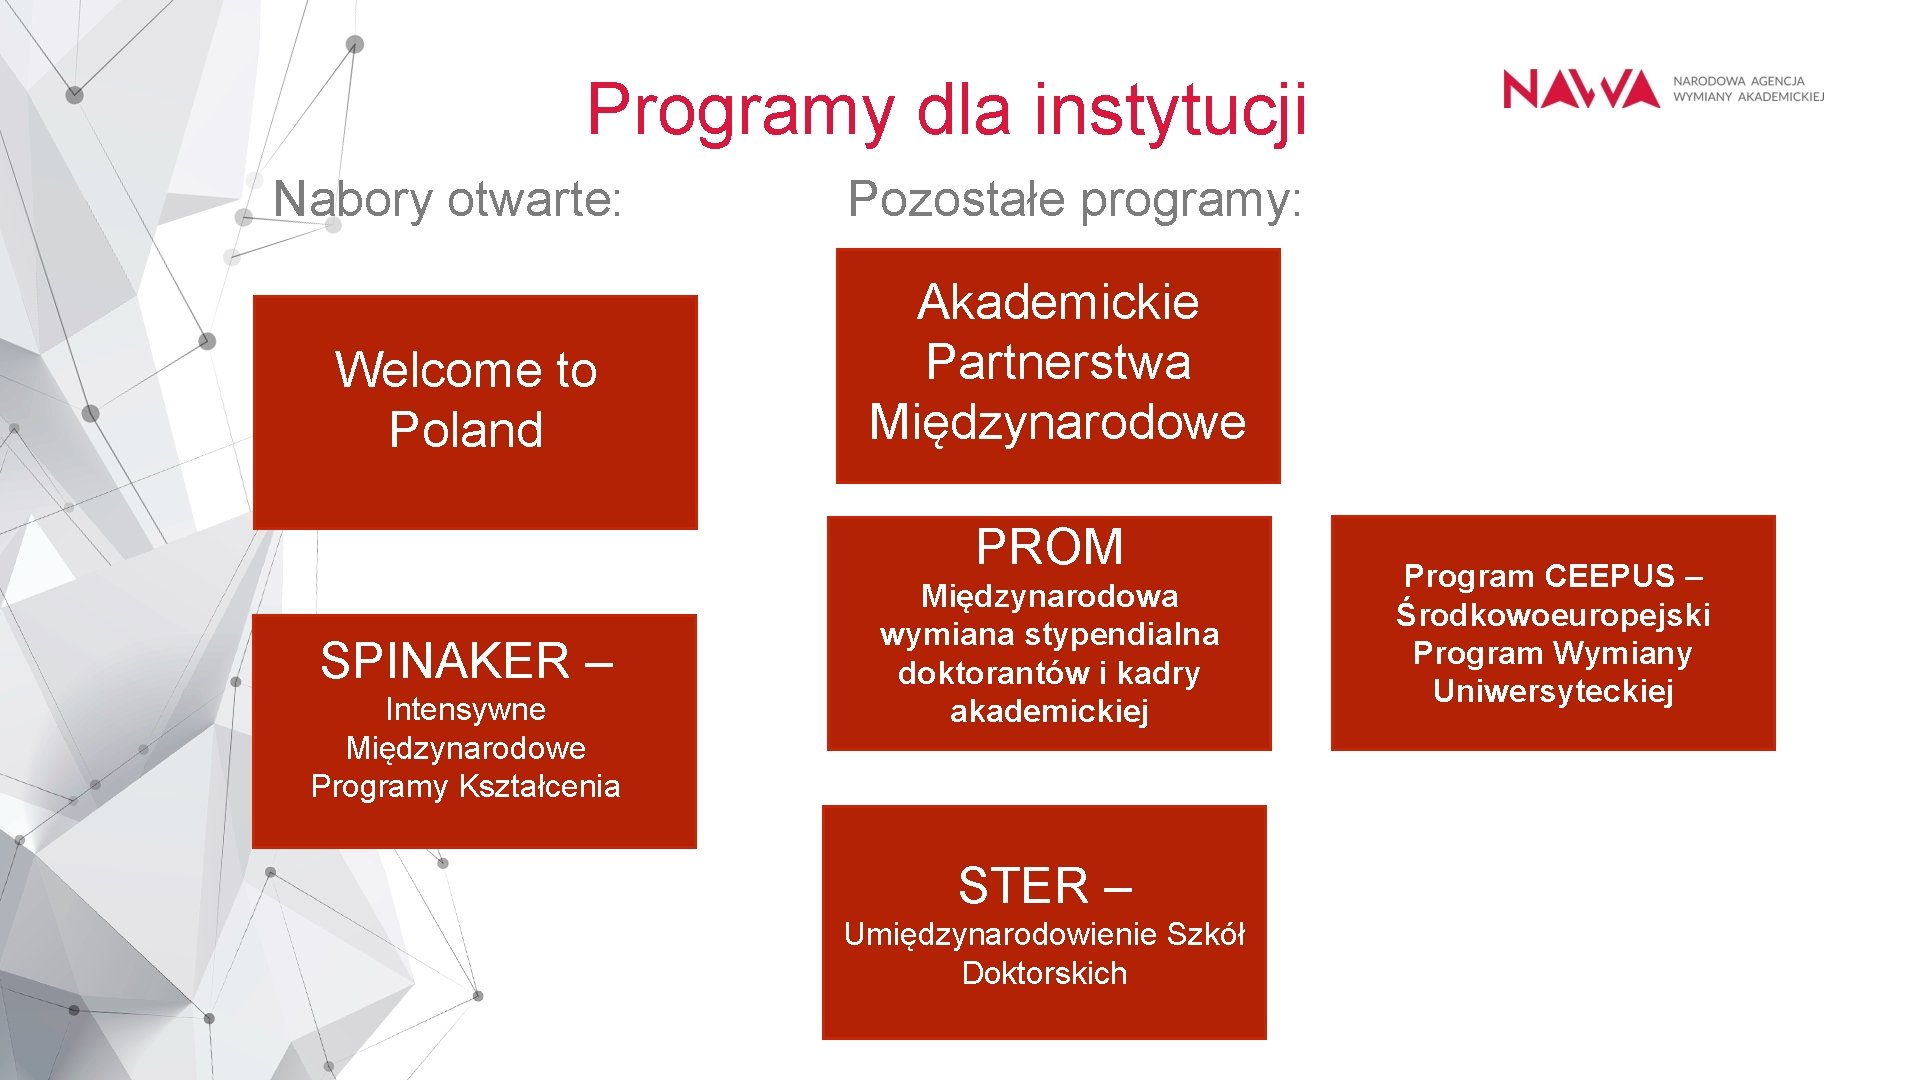 Programy dla instytucji Nabory otwarte: Welcome to Poland Pozostałe programy: Akademickie Partnerstwa Międzynarodowe PROM